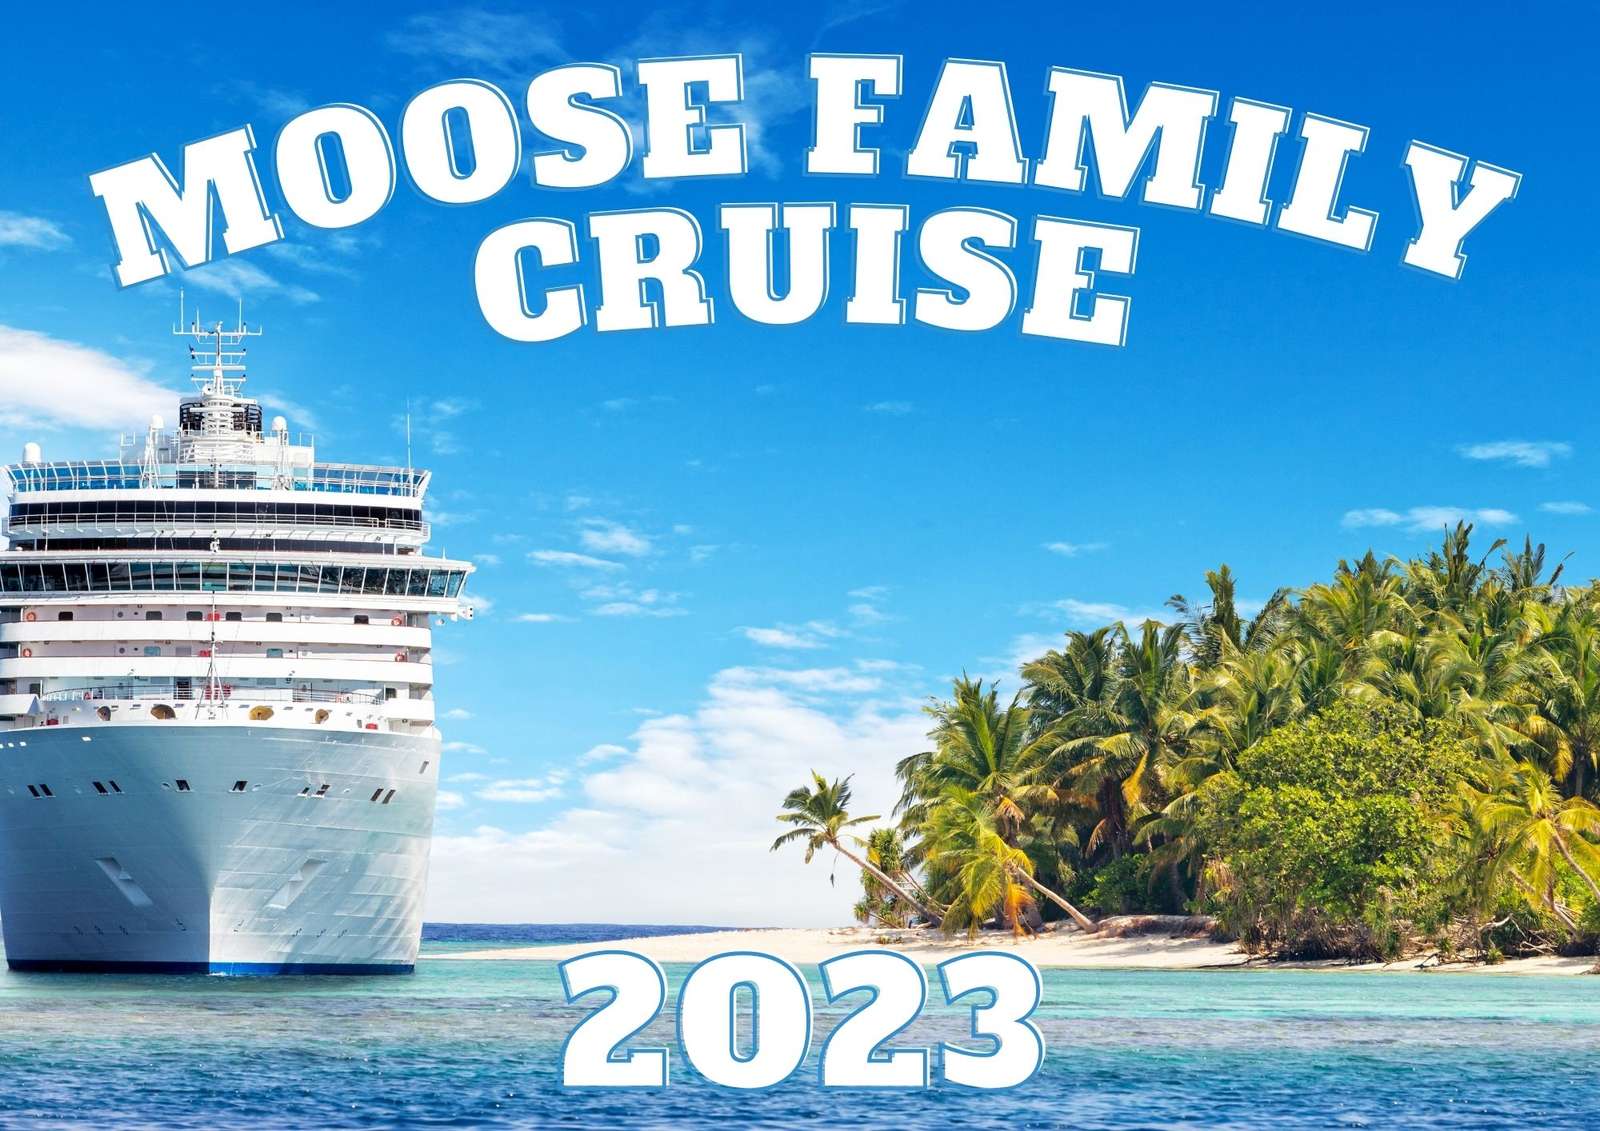 Croaziera în familie Moose 2023 puzzle online din fotografie